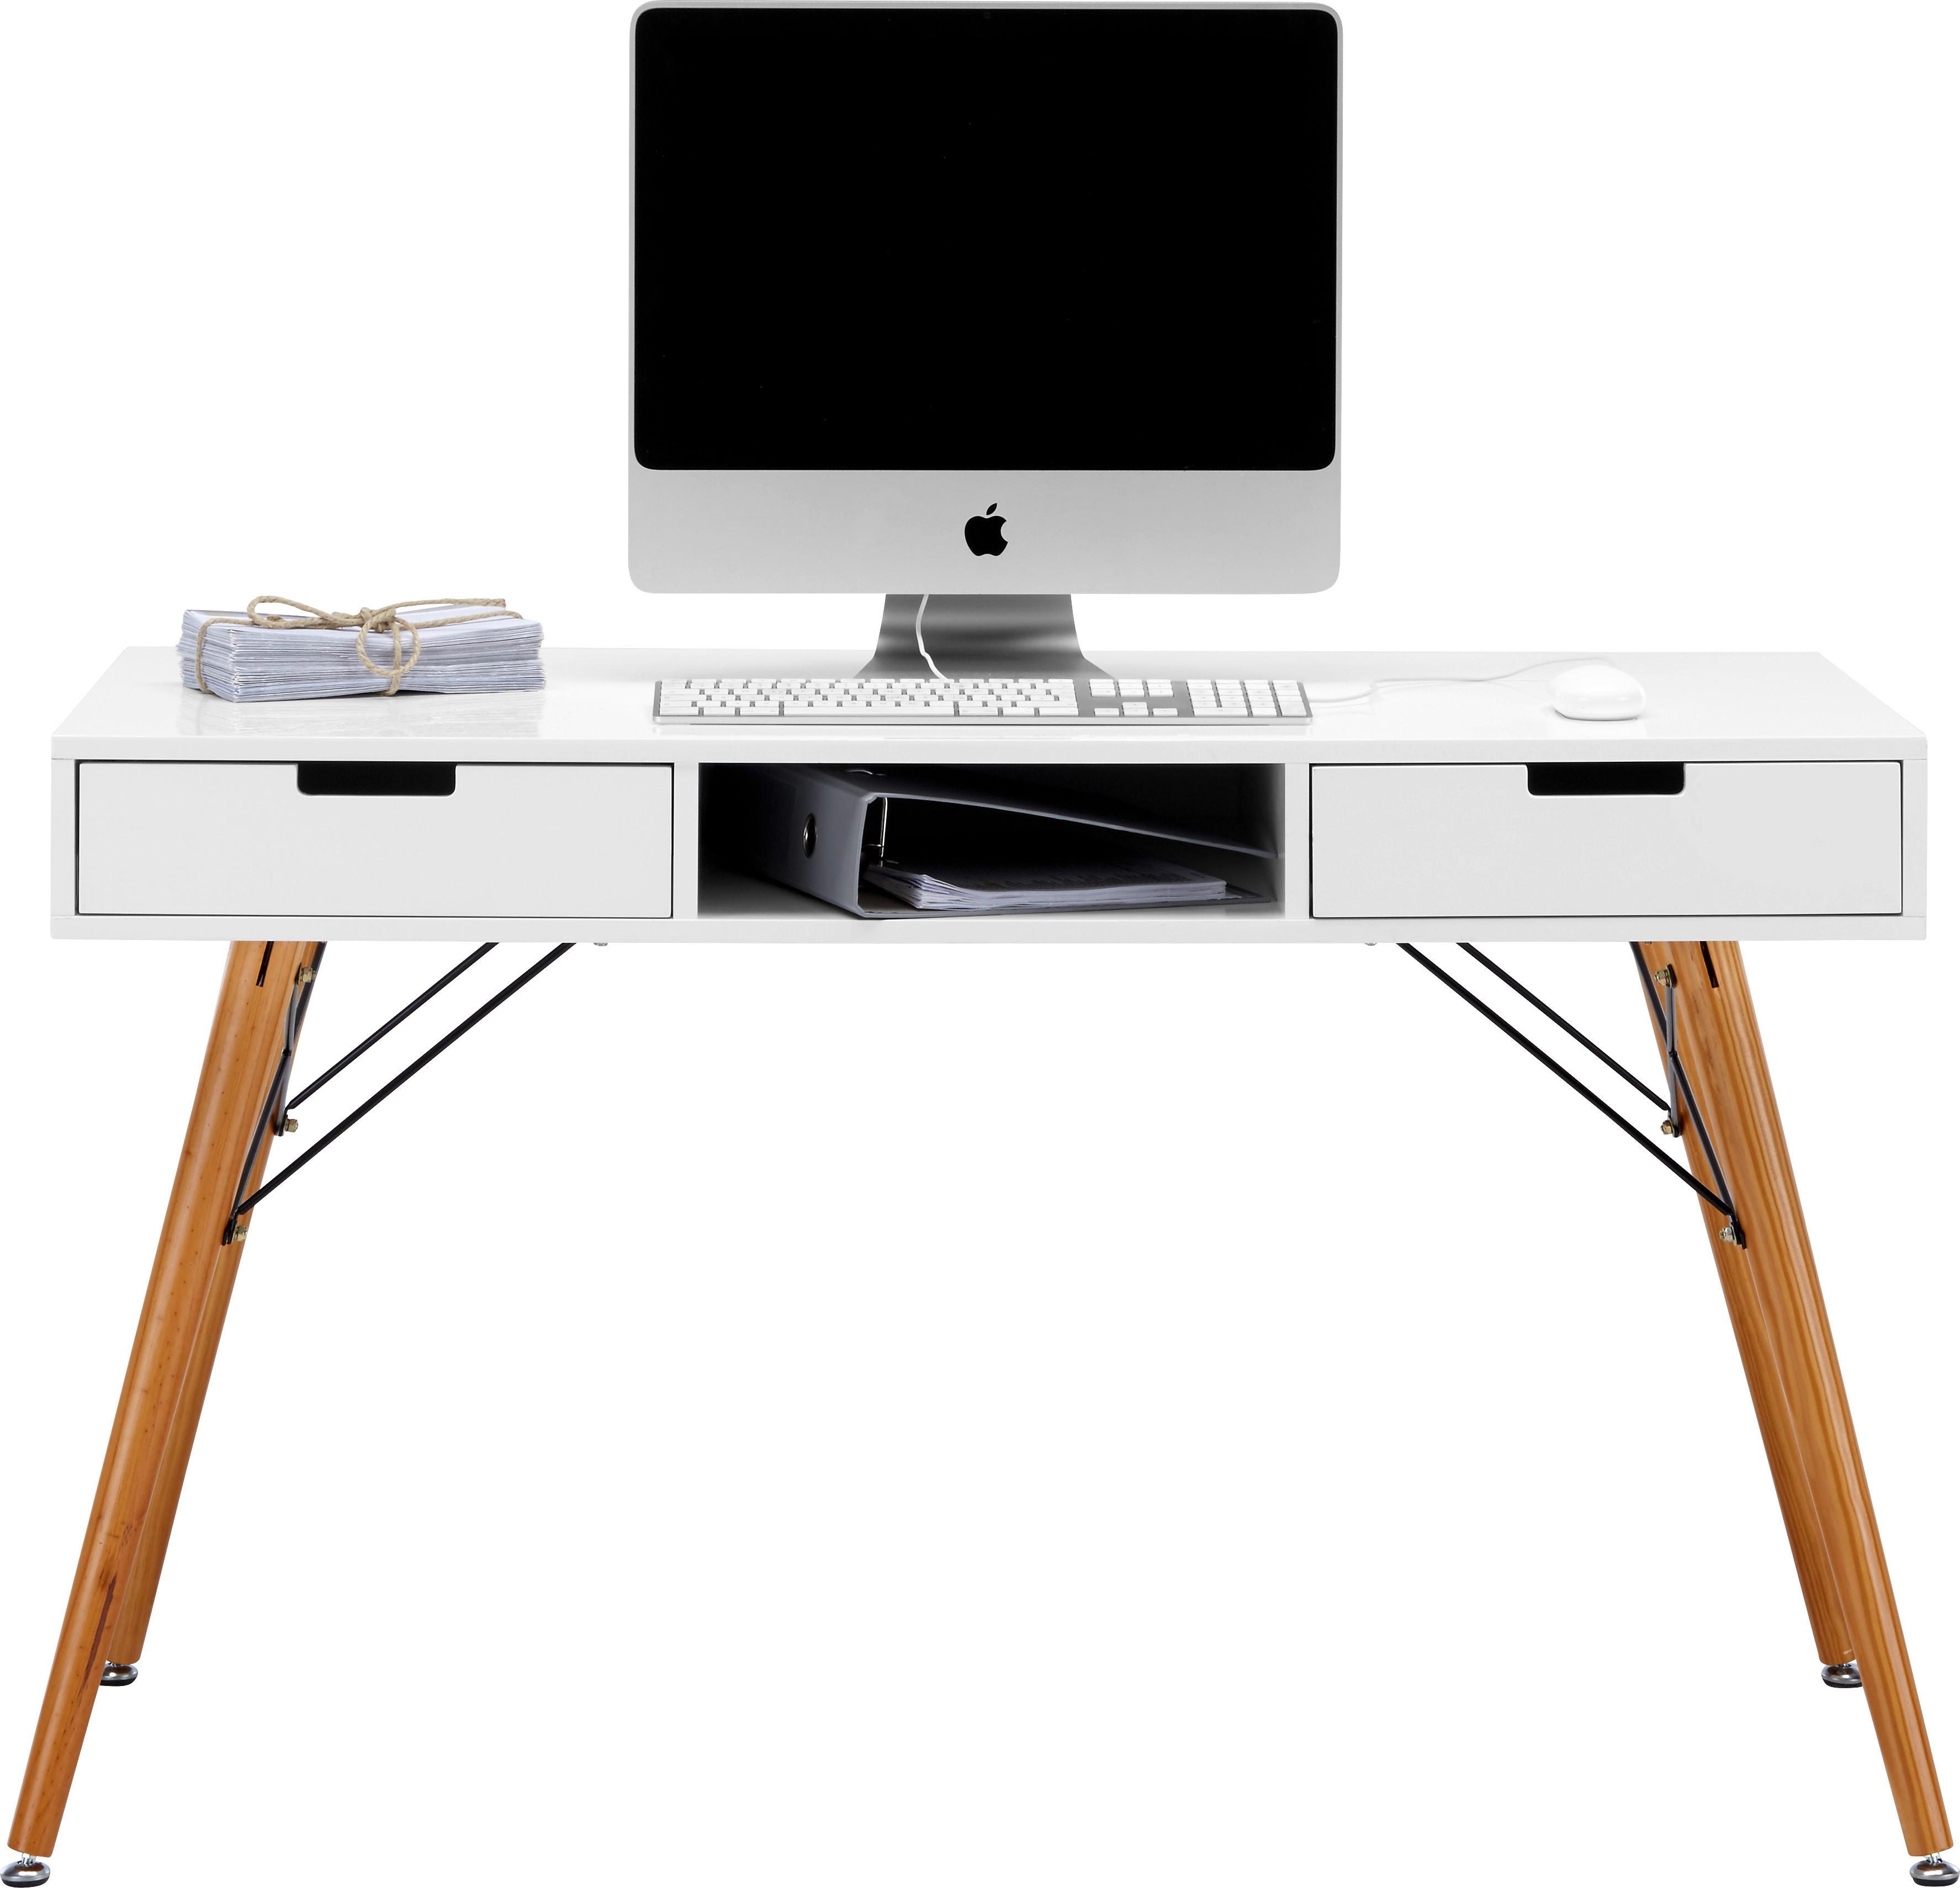 Schreibtisch in Weiß/Braun Massiv - Braun/Weiß, MODERN, Holz/Metall (120/74/55cm) - Modern Living